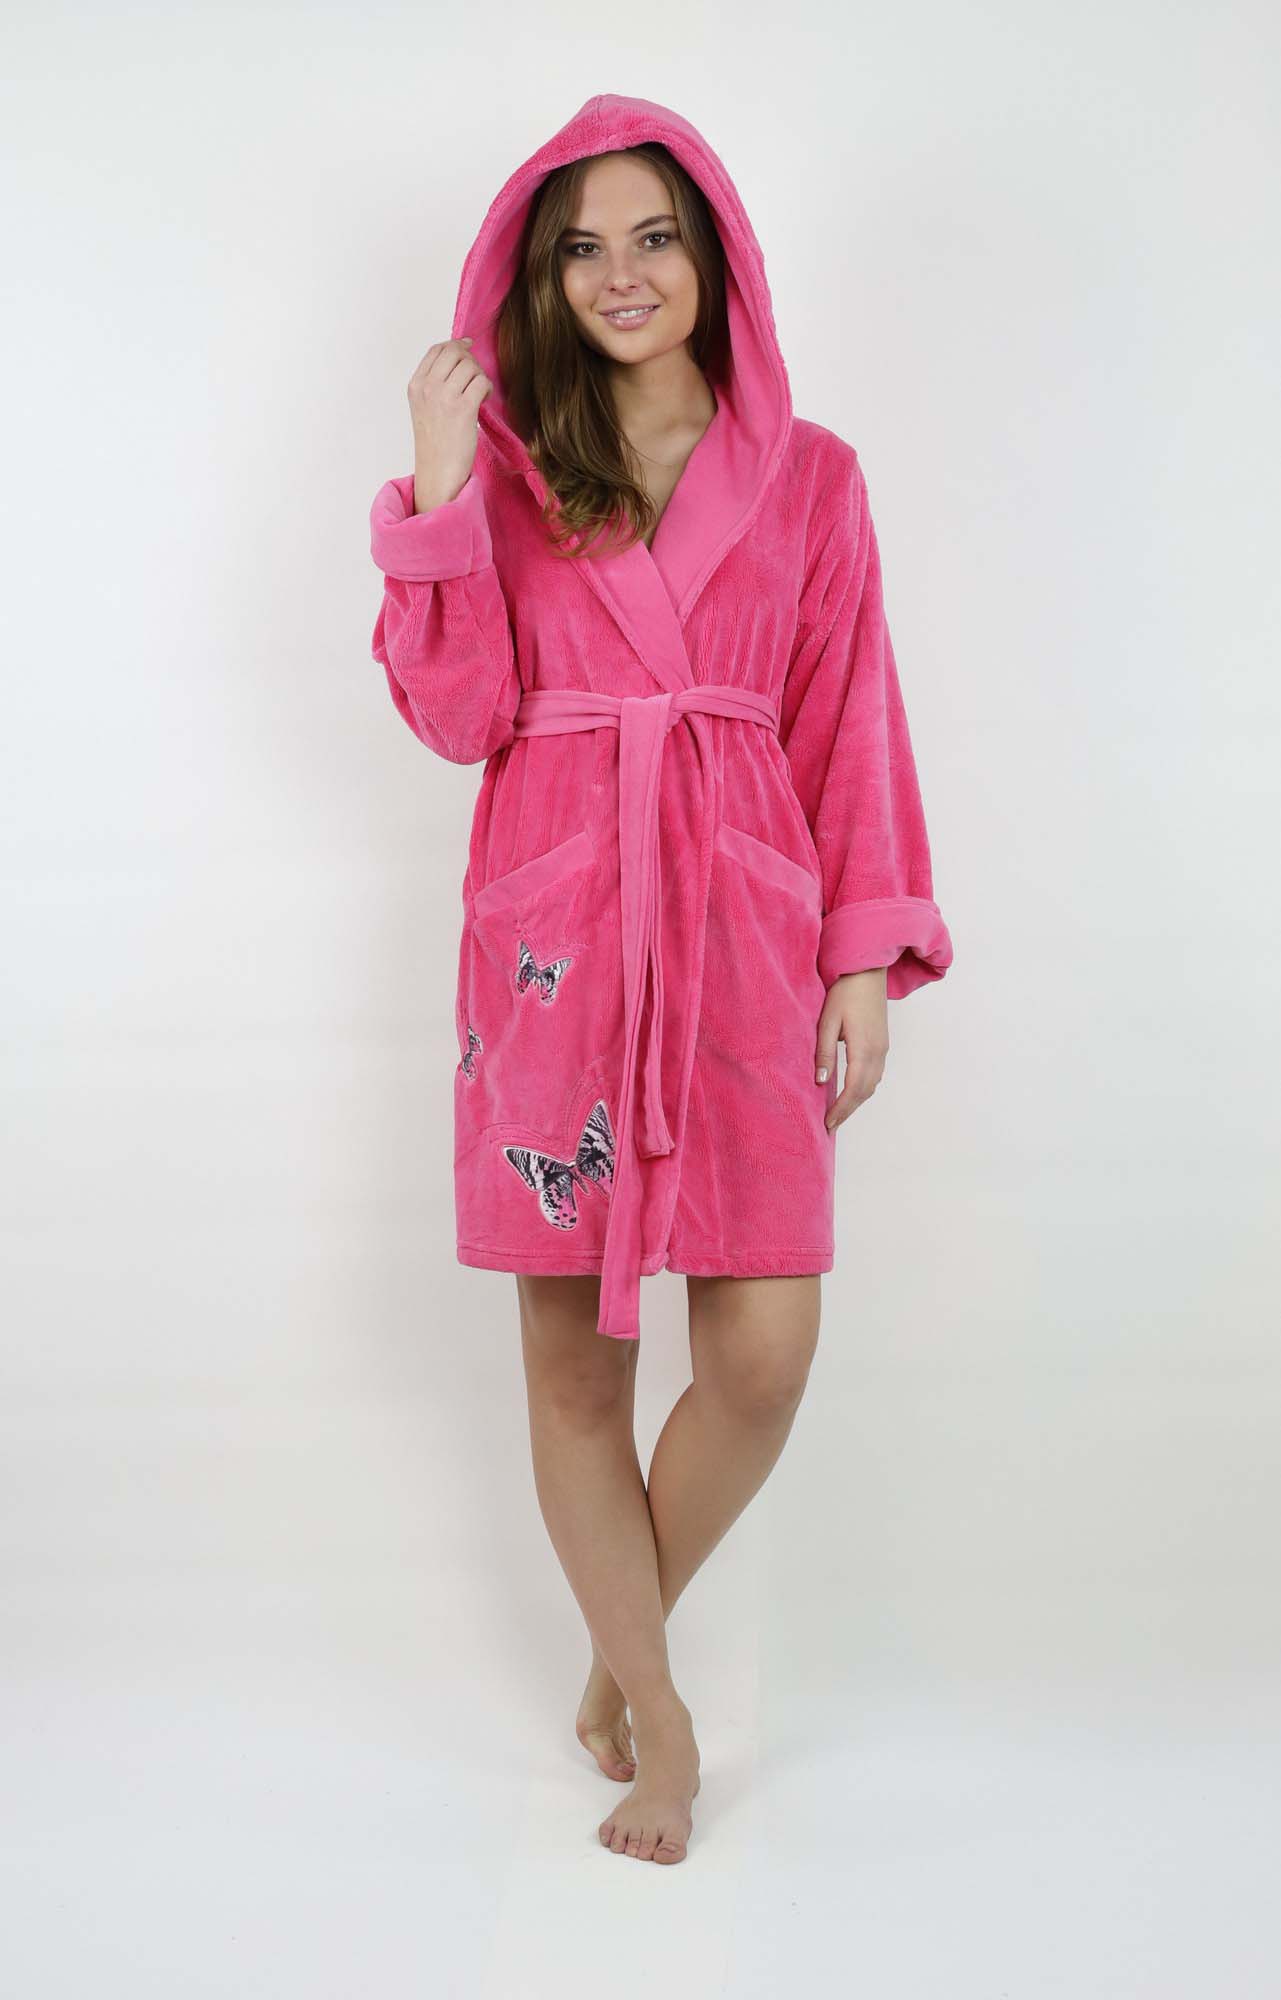 Банный халат Kelsie Цвет: Розовый (S), размер S